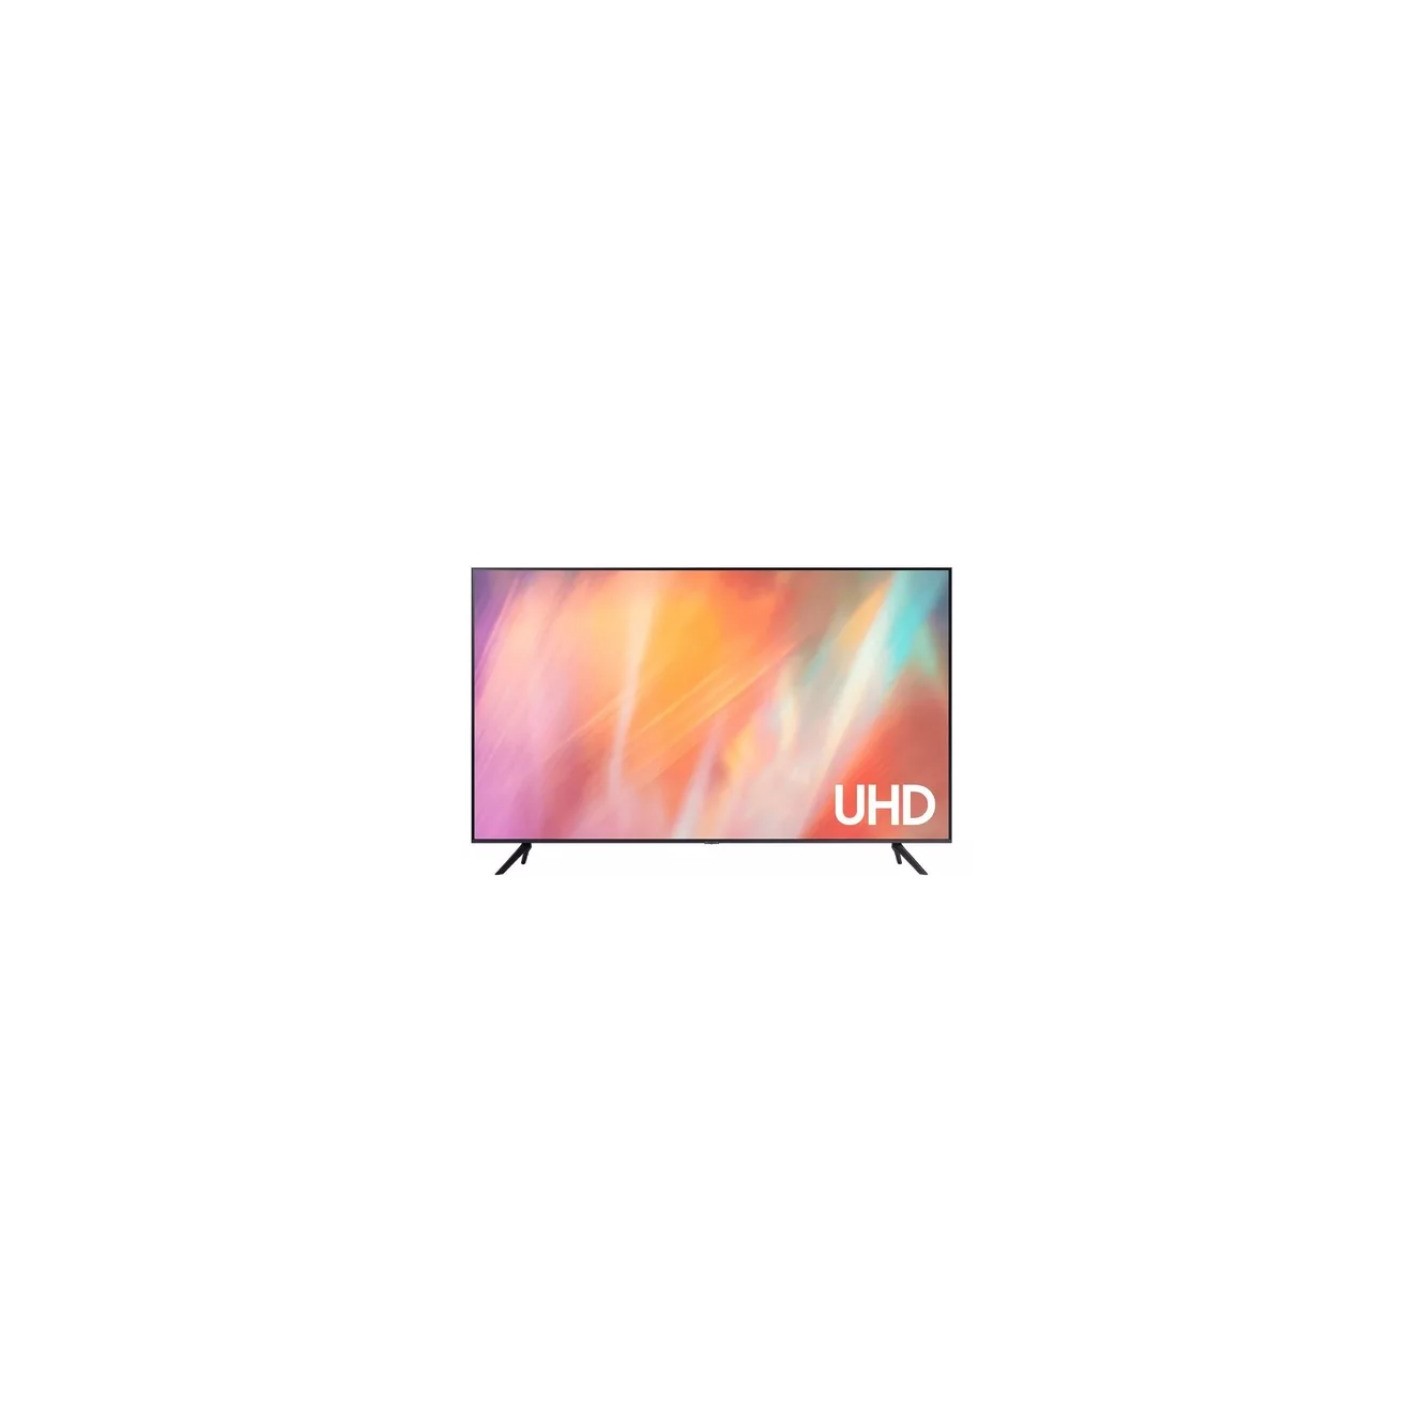 Samsung Business TV  Una TV diseñada para tu negocio 